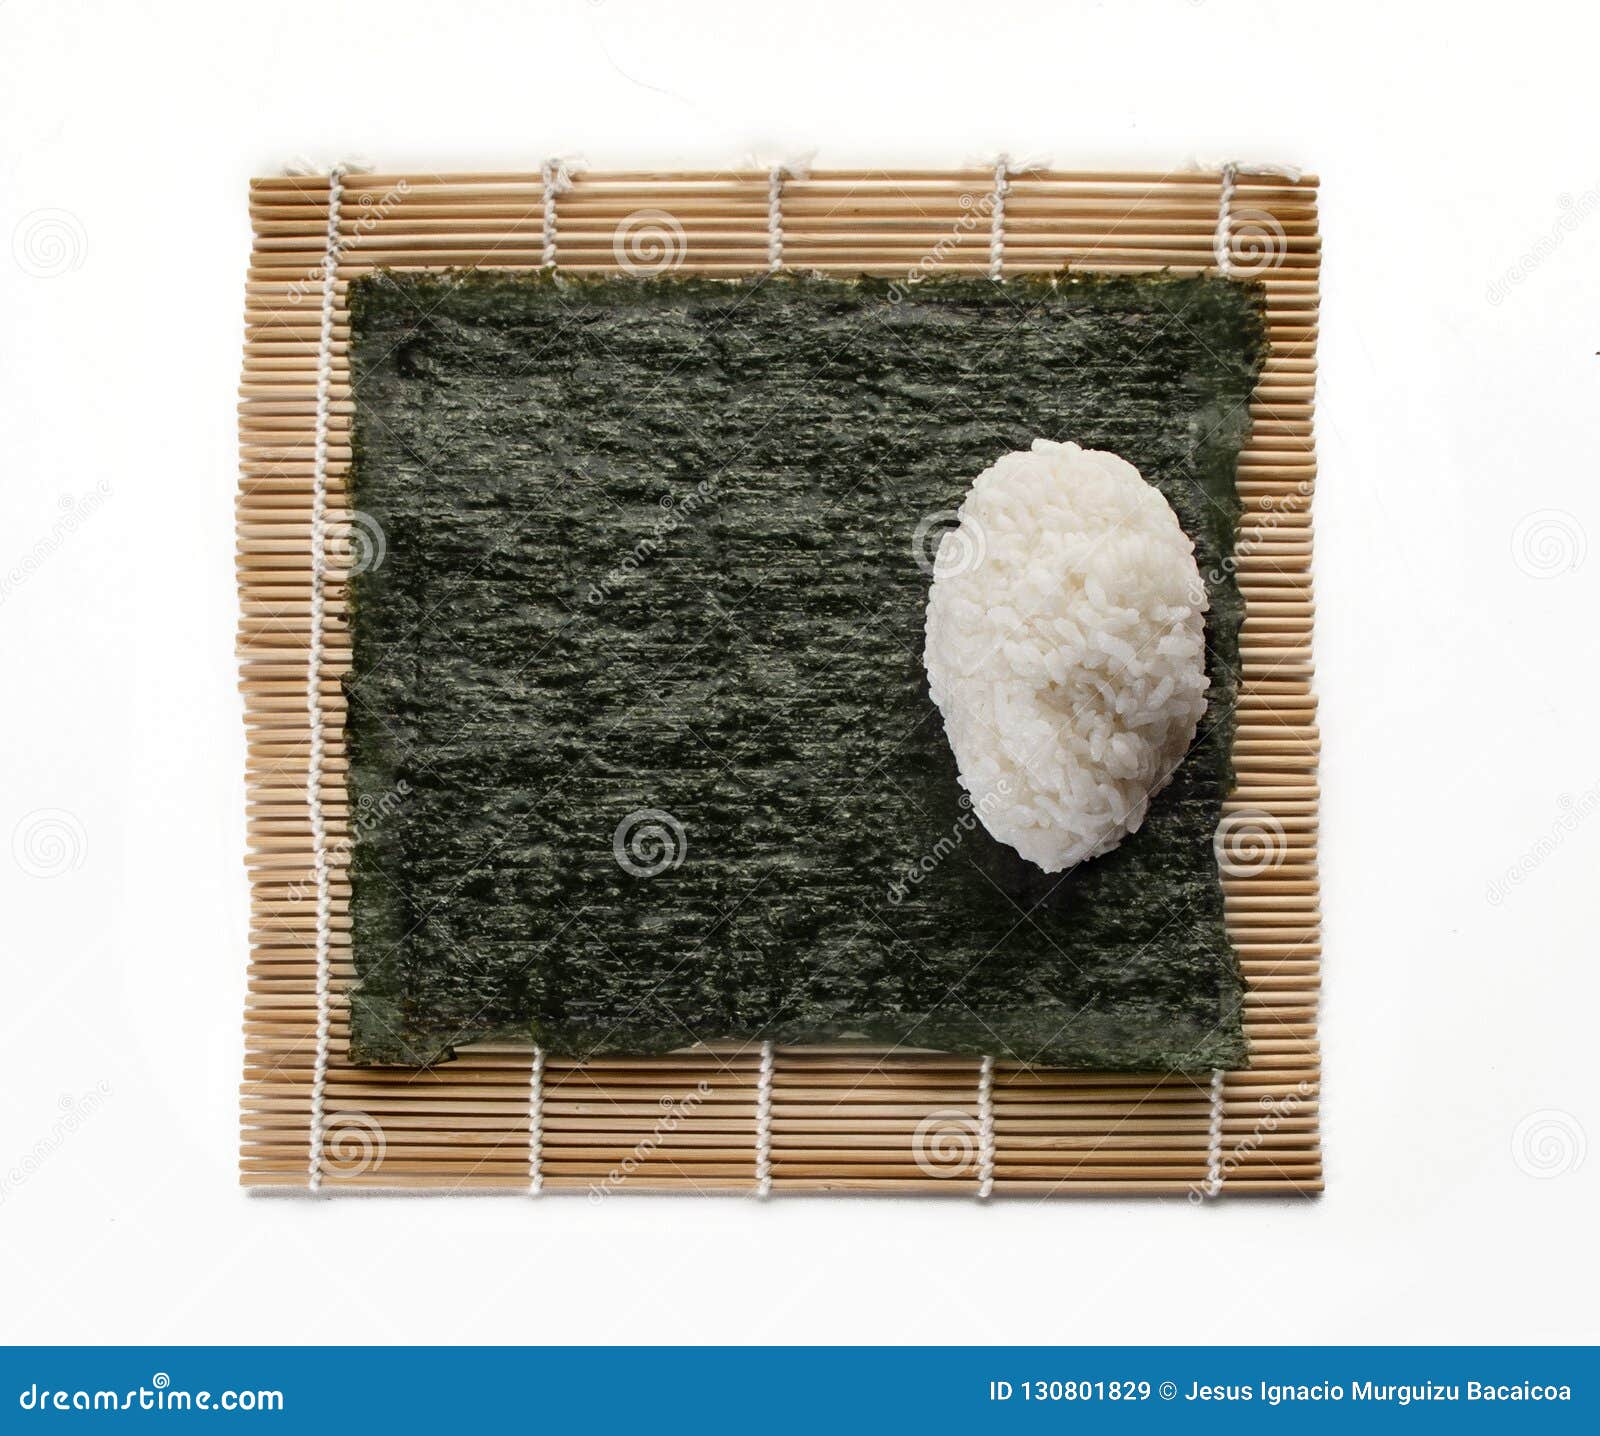 La Base Quadrata Di Alga Per I Sushi Con Una Palla Di Riso Su Una Stuoia  Vede Immagine Stock - Immagine di stipendio, sfera: 130801829